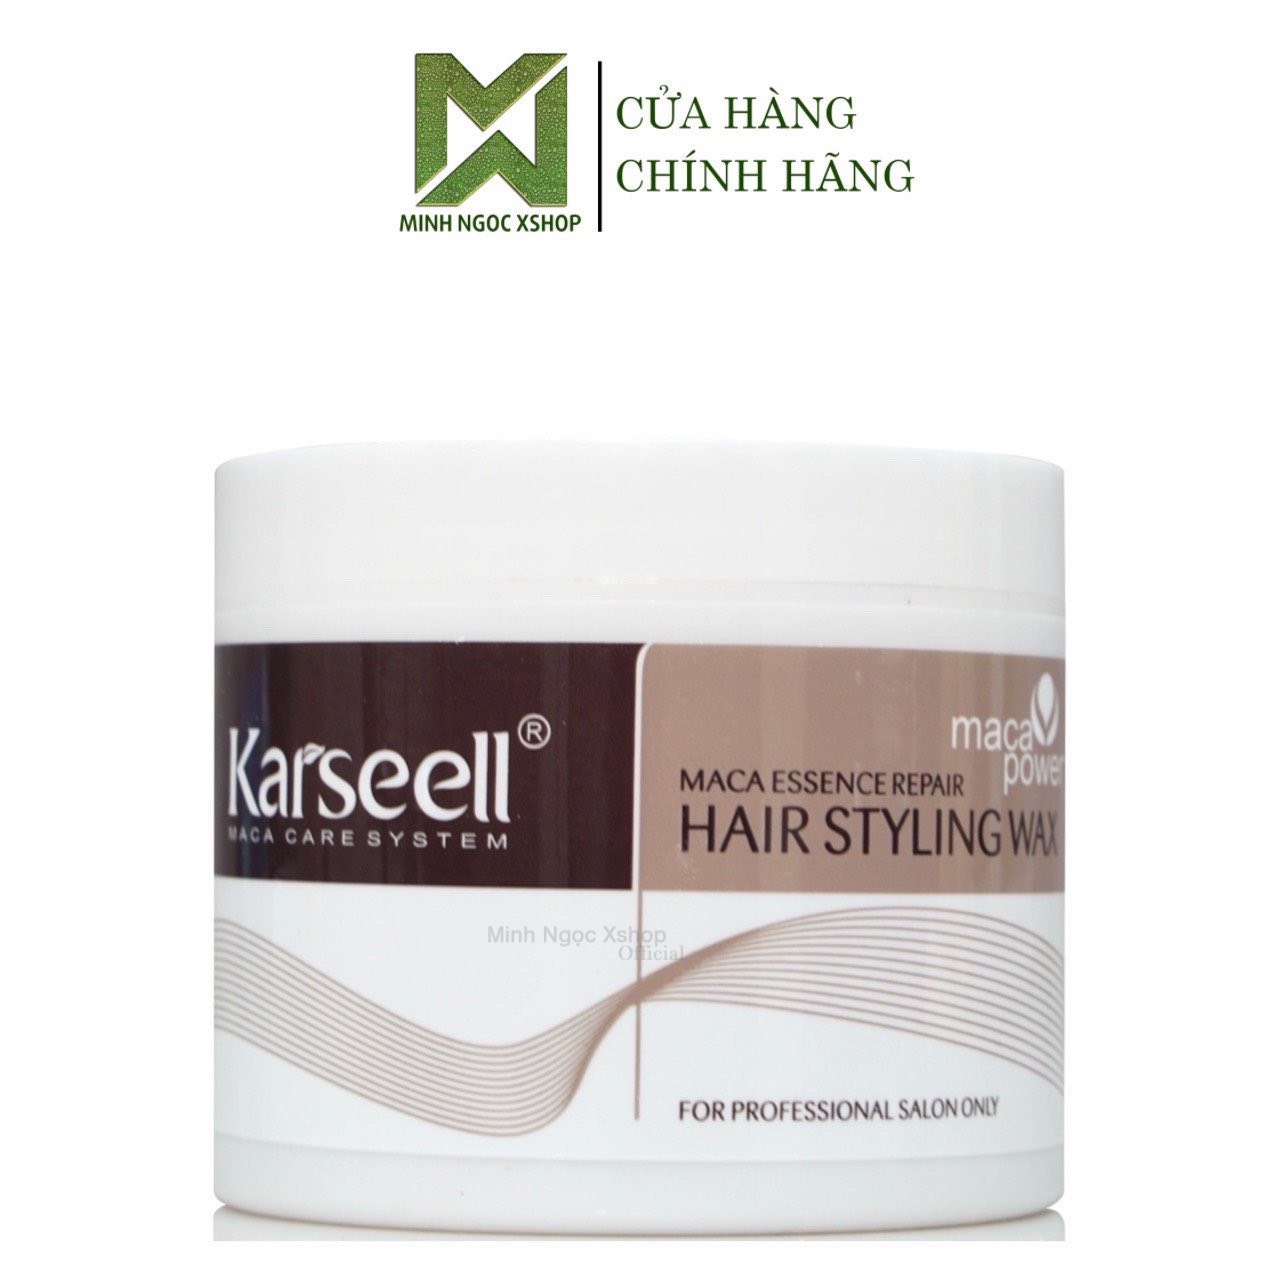 Sáp vuốt tóc nam nữ Karseell Maca Hair Styling Wax 100g, chăm sóc giữ nếp  tóc 